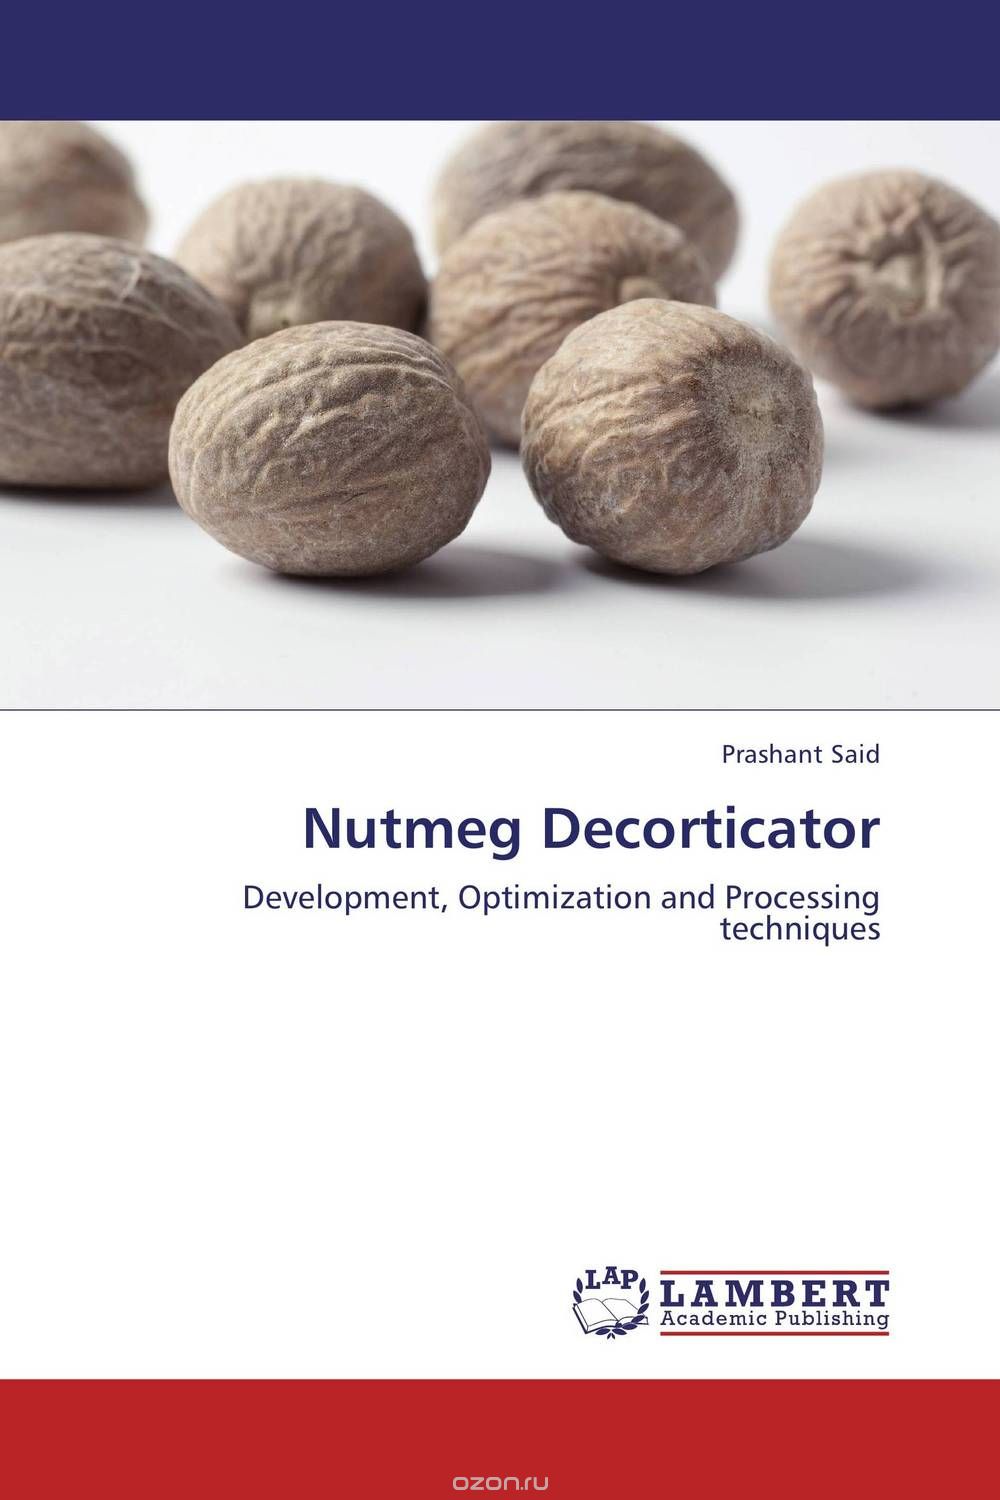 Скачать книгу "Nutmeg Decorticator"